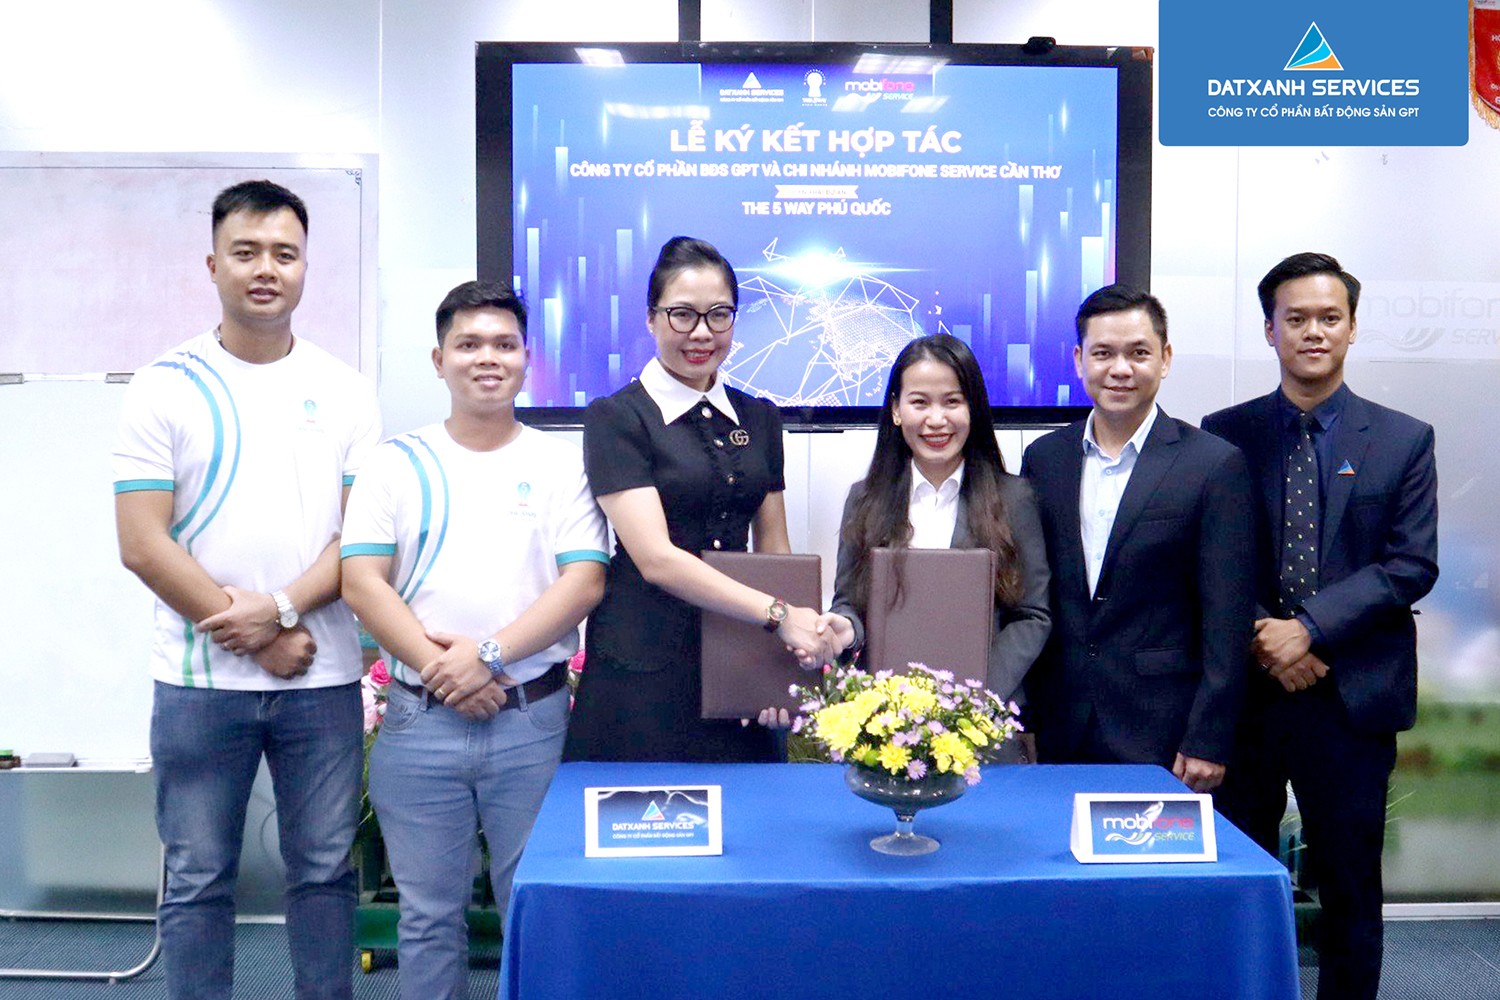 Công ty Cổ Phần BĐS GPT hợp tác với chi nhánh MobiFone Service Cần Thơ triển khai dự án The 5Way Phu Quoc - 2